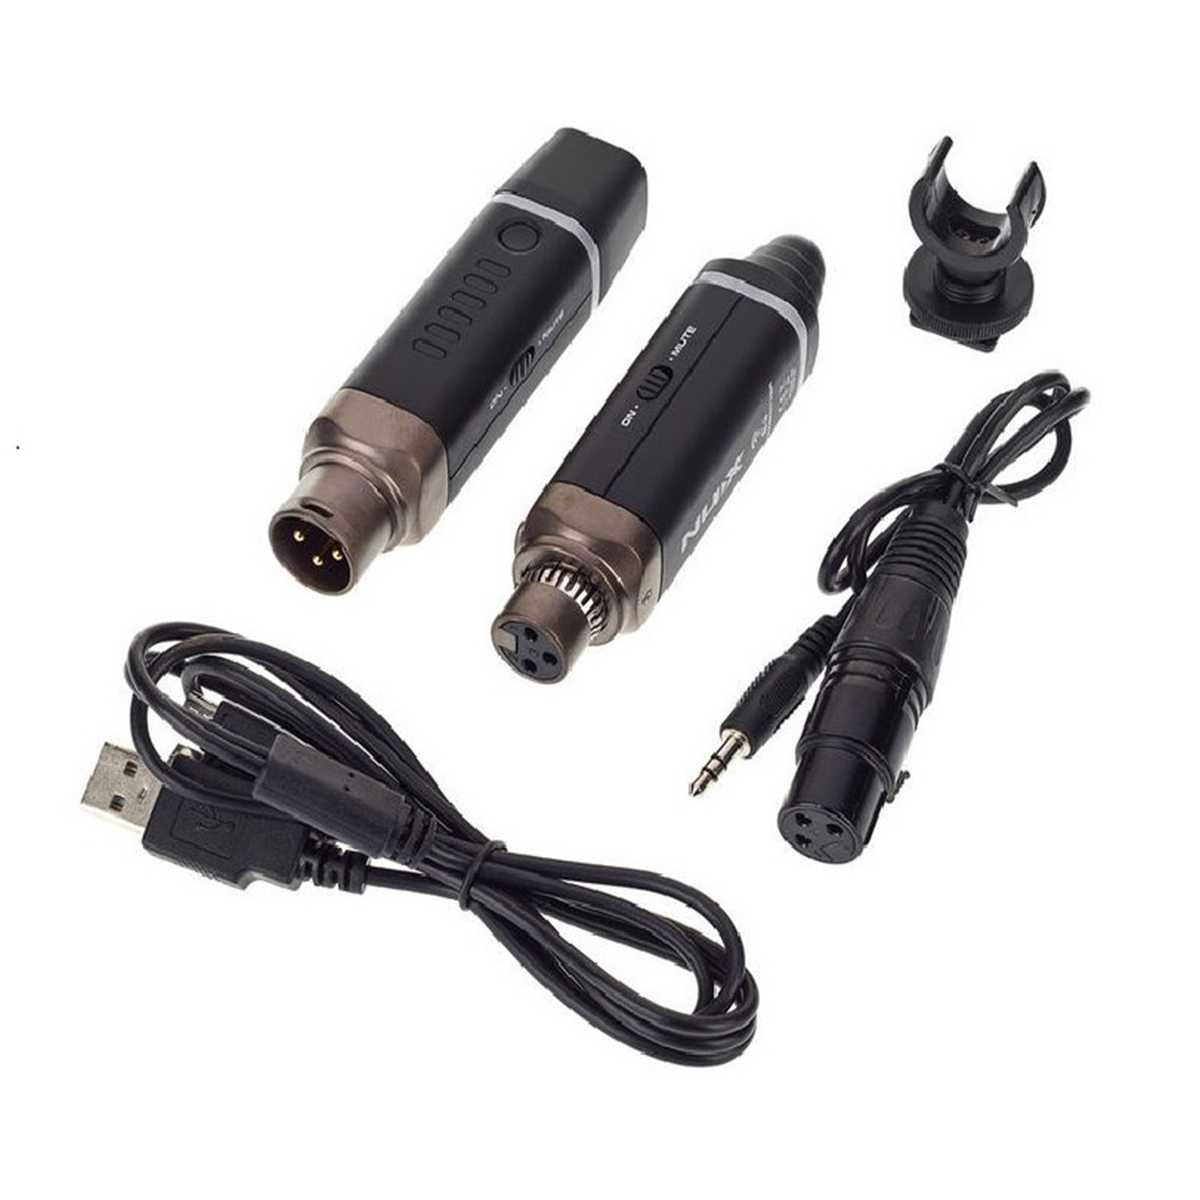 Sistema Wireless para microfono 24GH Nux B 3 Ditronics Ecuador 3